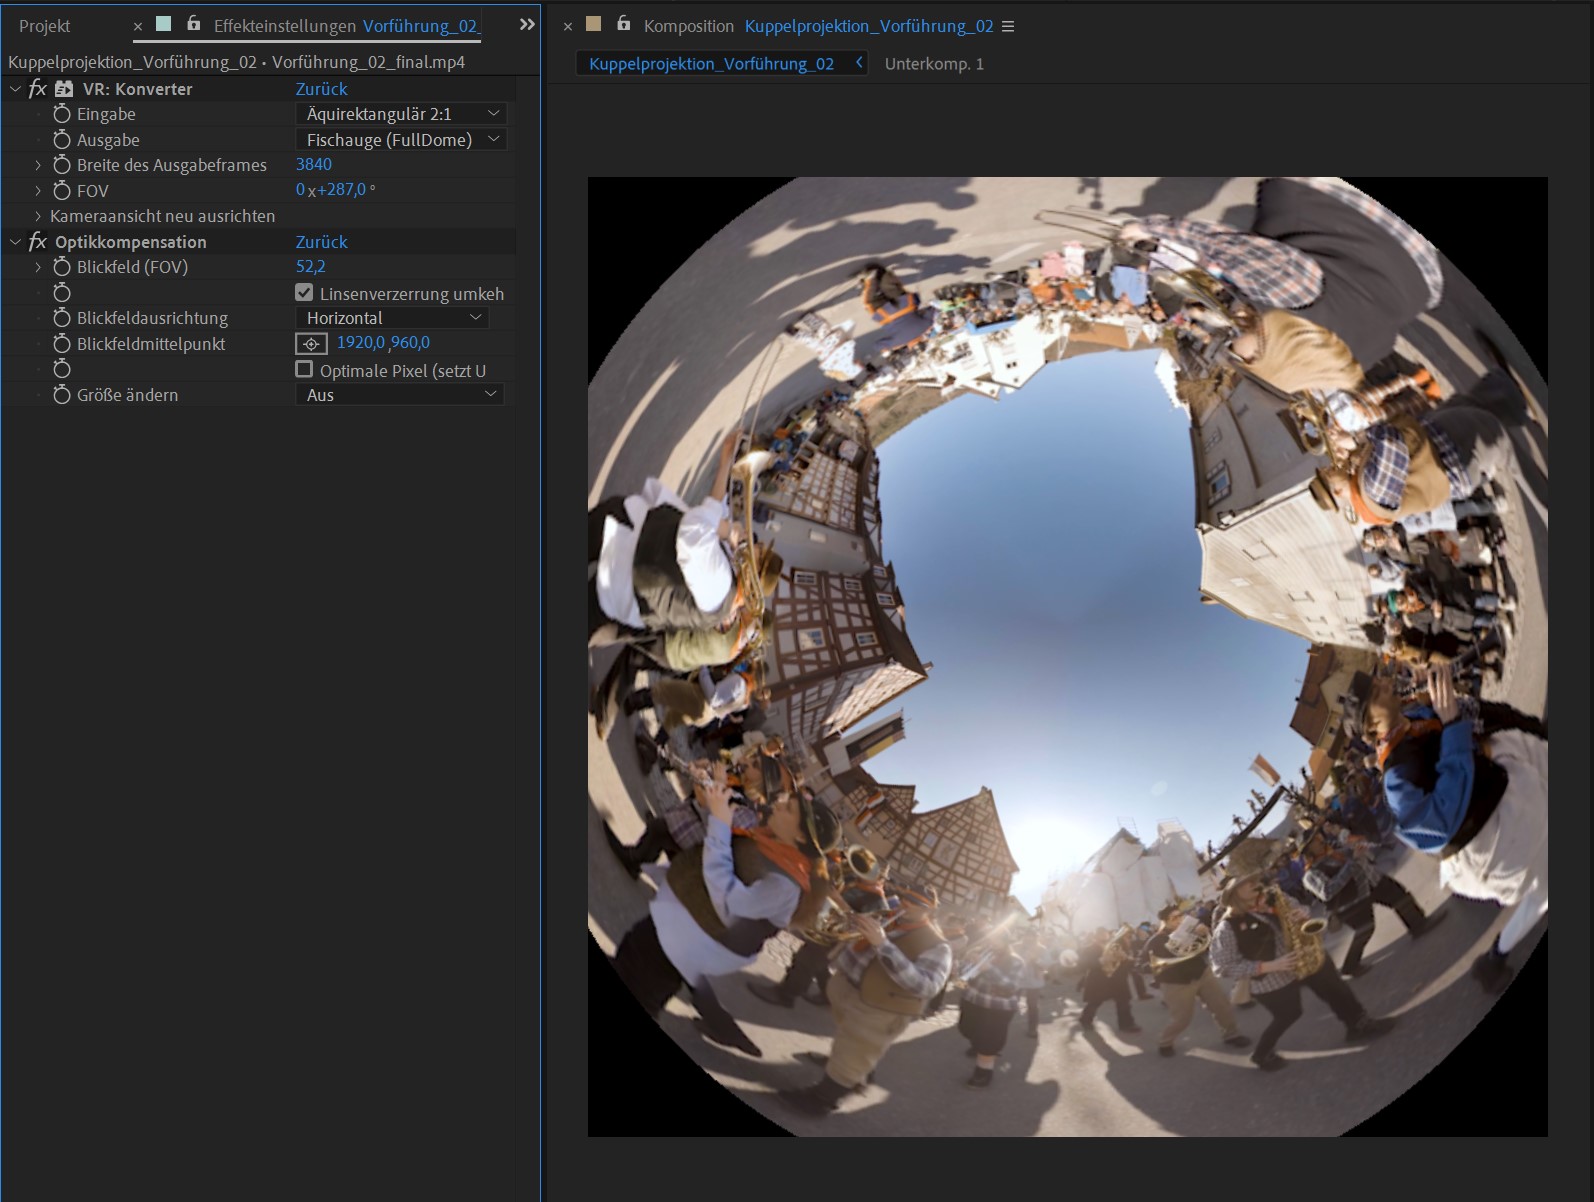 VR-Video in Kuppelprojektion umgewandelt mit erweiterten bzw. "aufgeblähtem" Nutzungsbereich für mehr Bildfläche